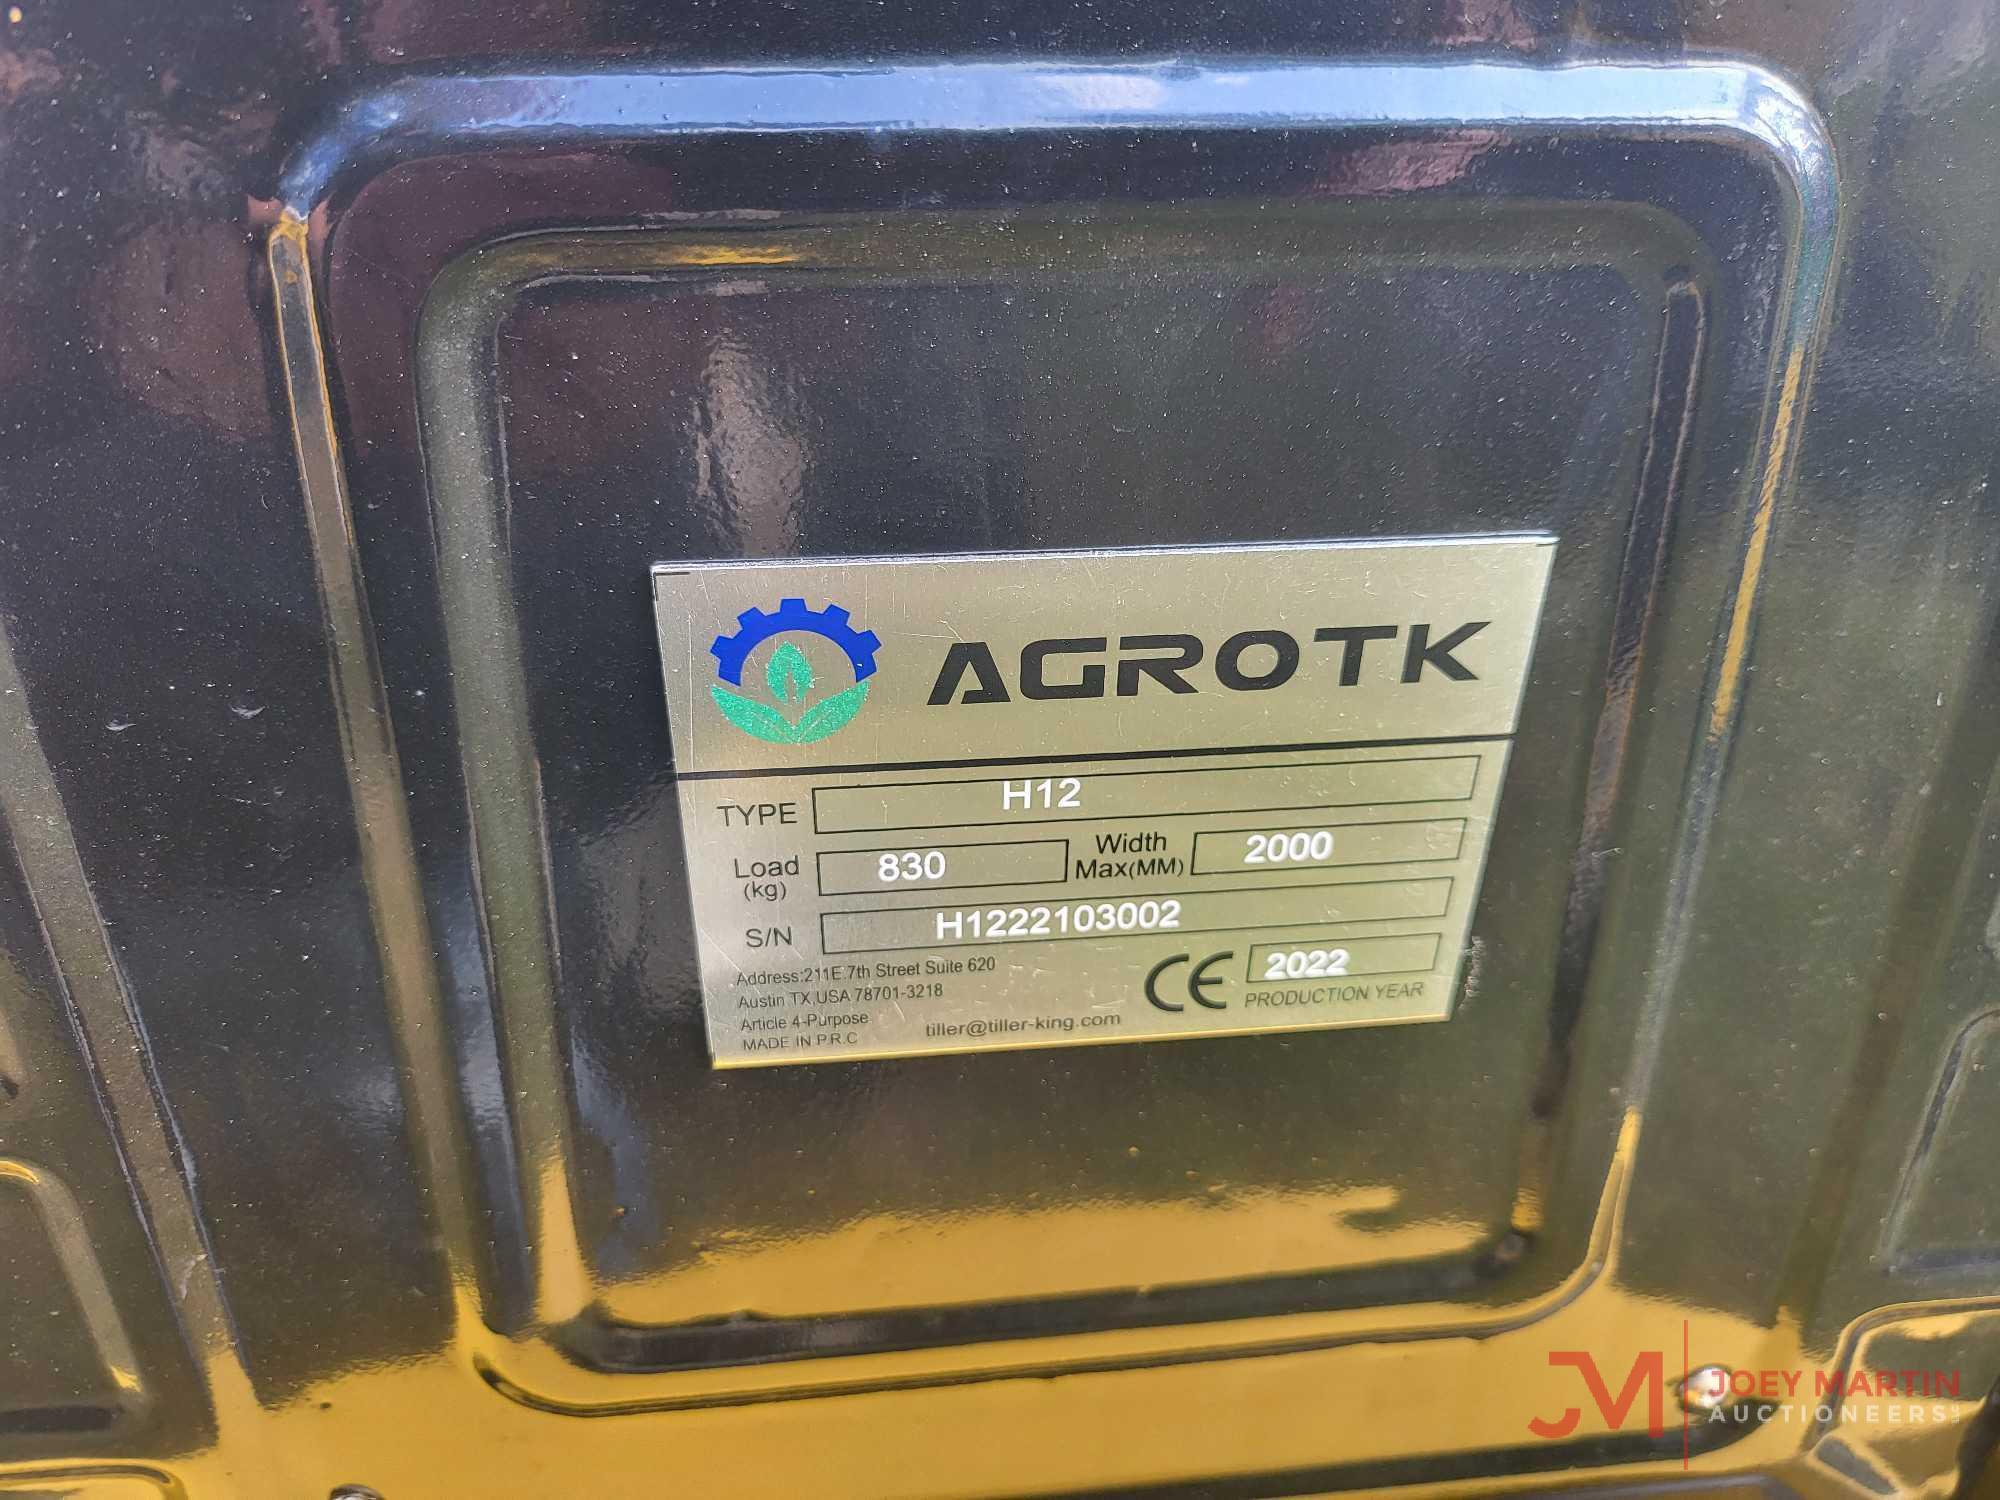 2020 AGROTK H12 MINI EXCAVATOR